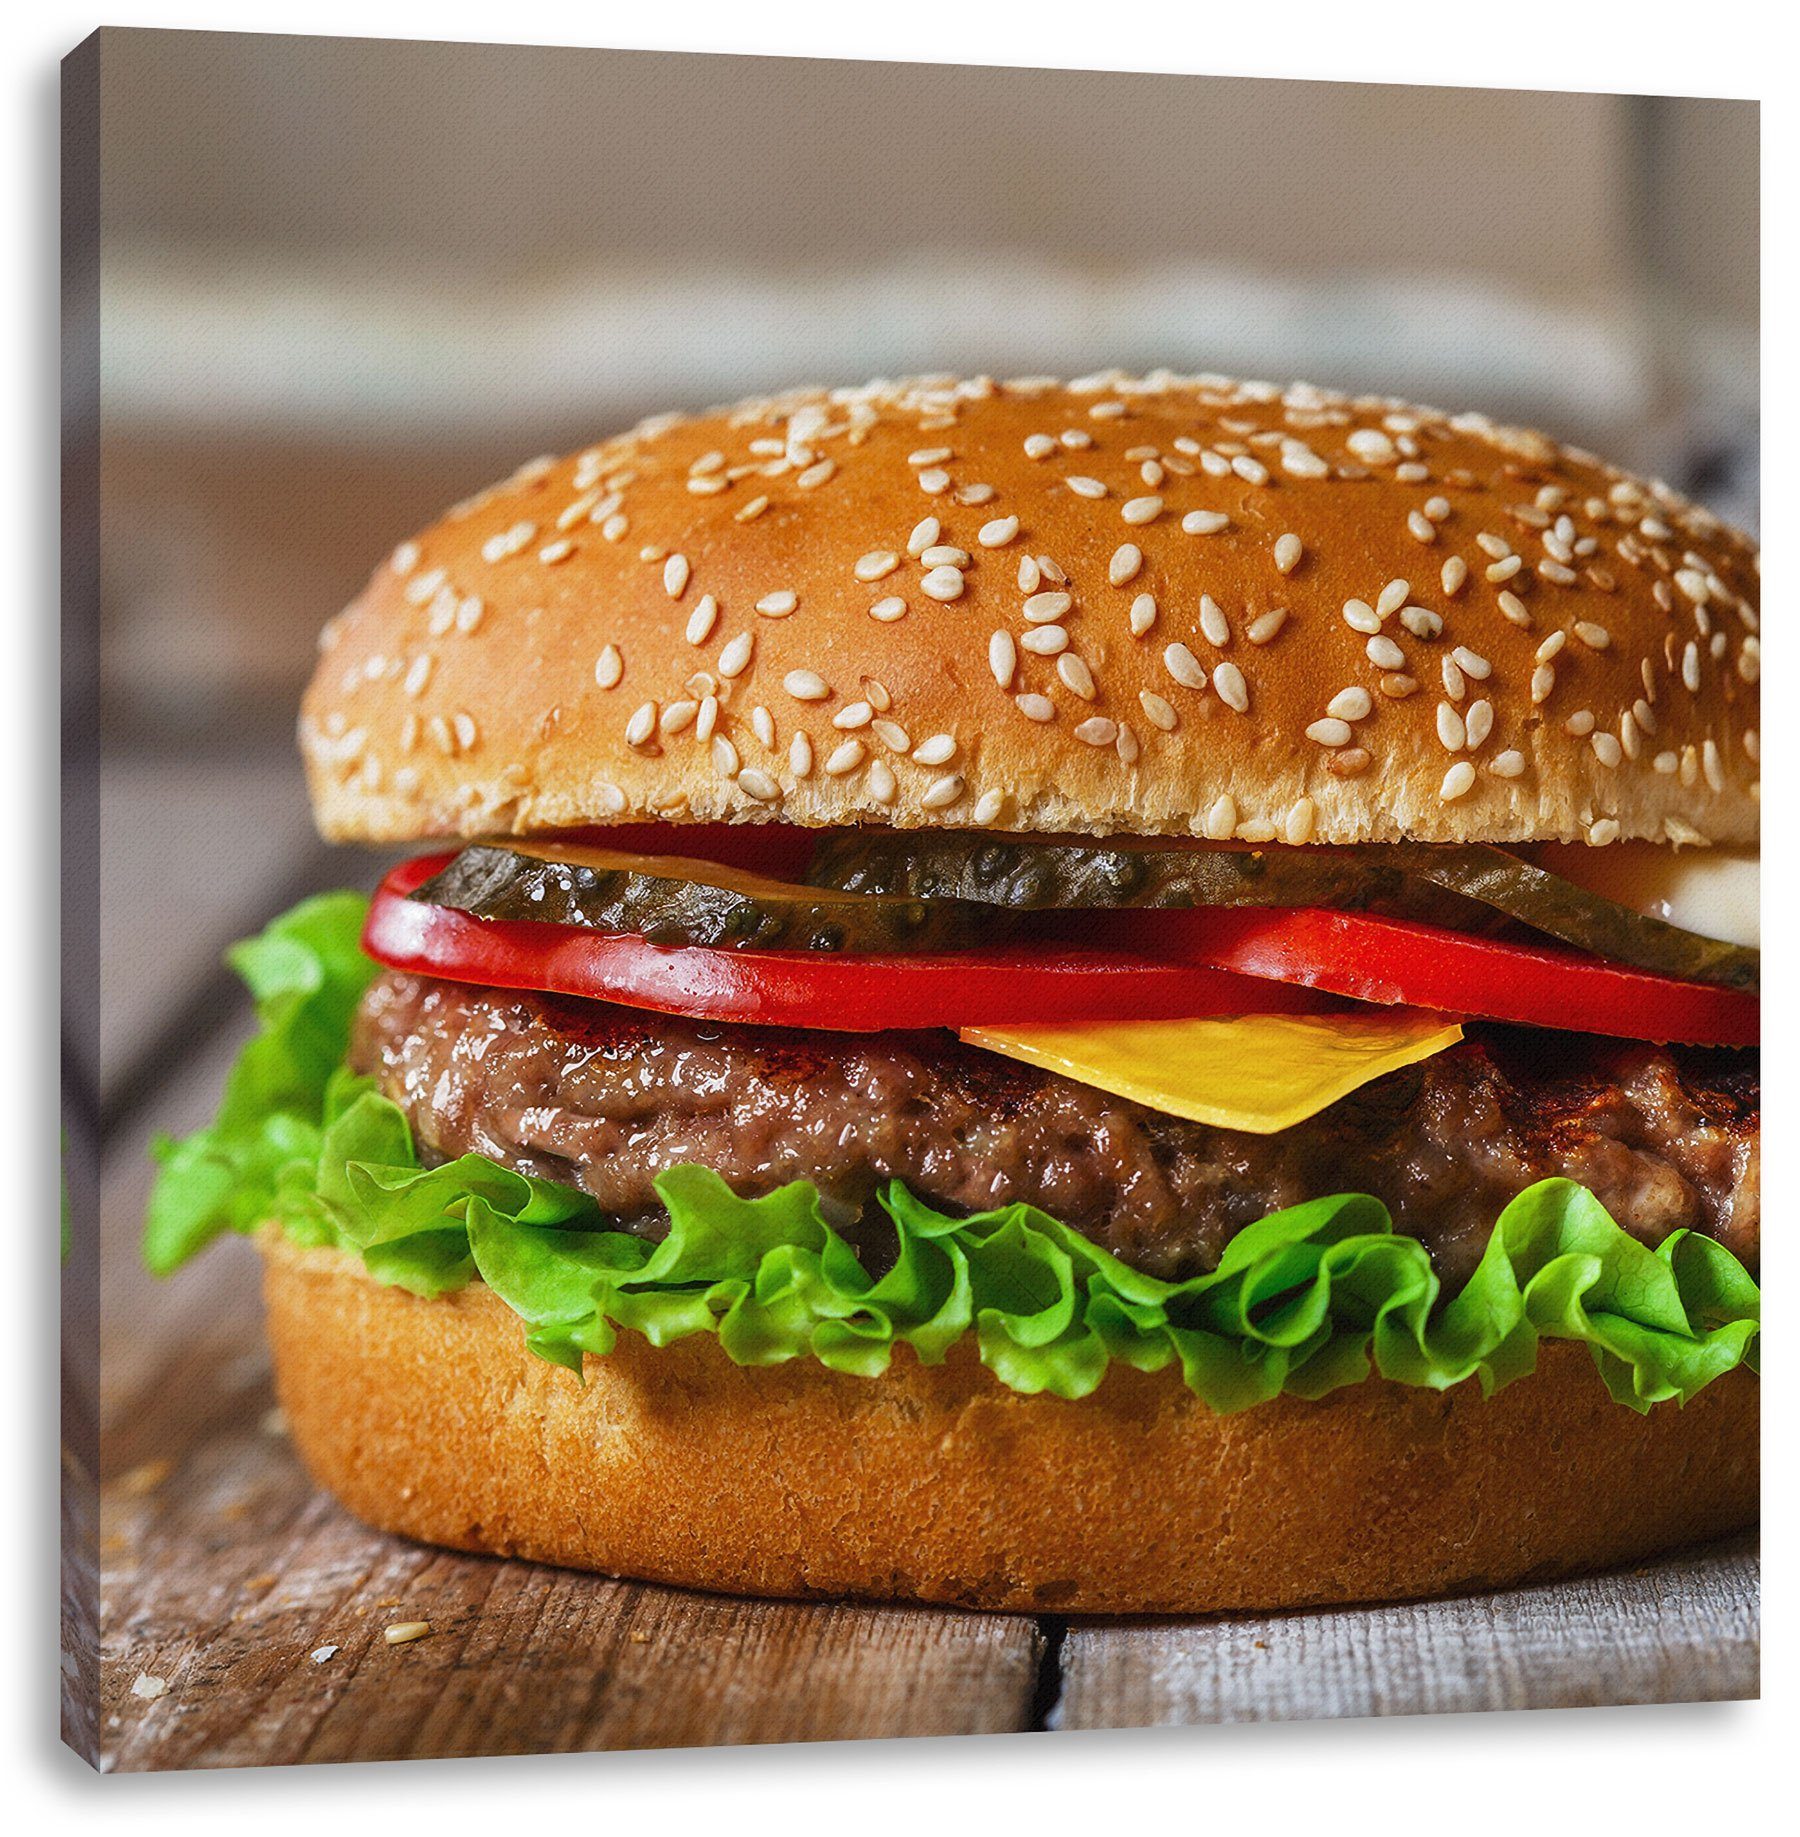 inkl. St), Leinwandbild mit bespannt, Zackenaufhänger Tomaten Burger (1 Burger mit Tomaten, Leinwandbild Pixxprint fertig